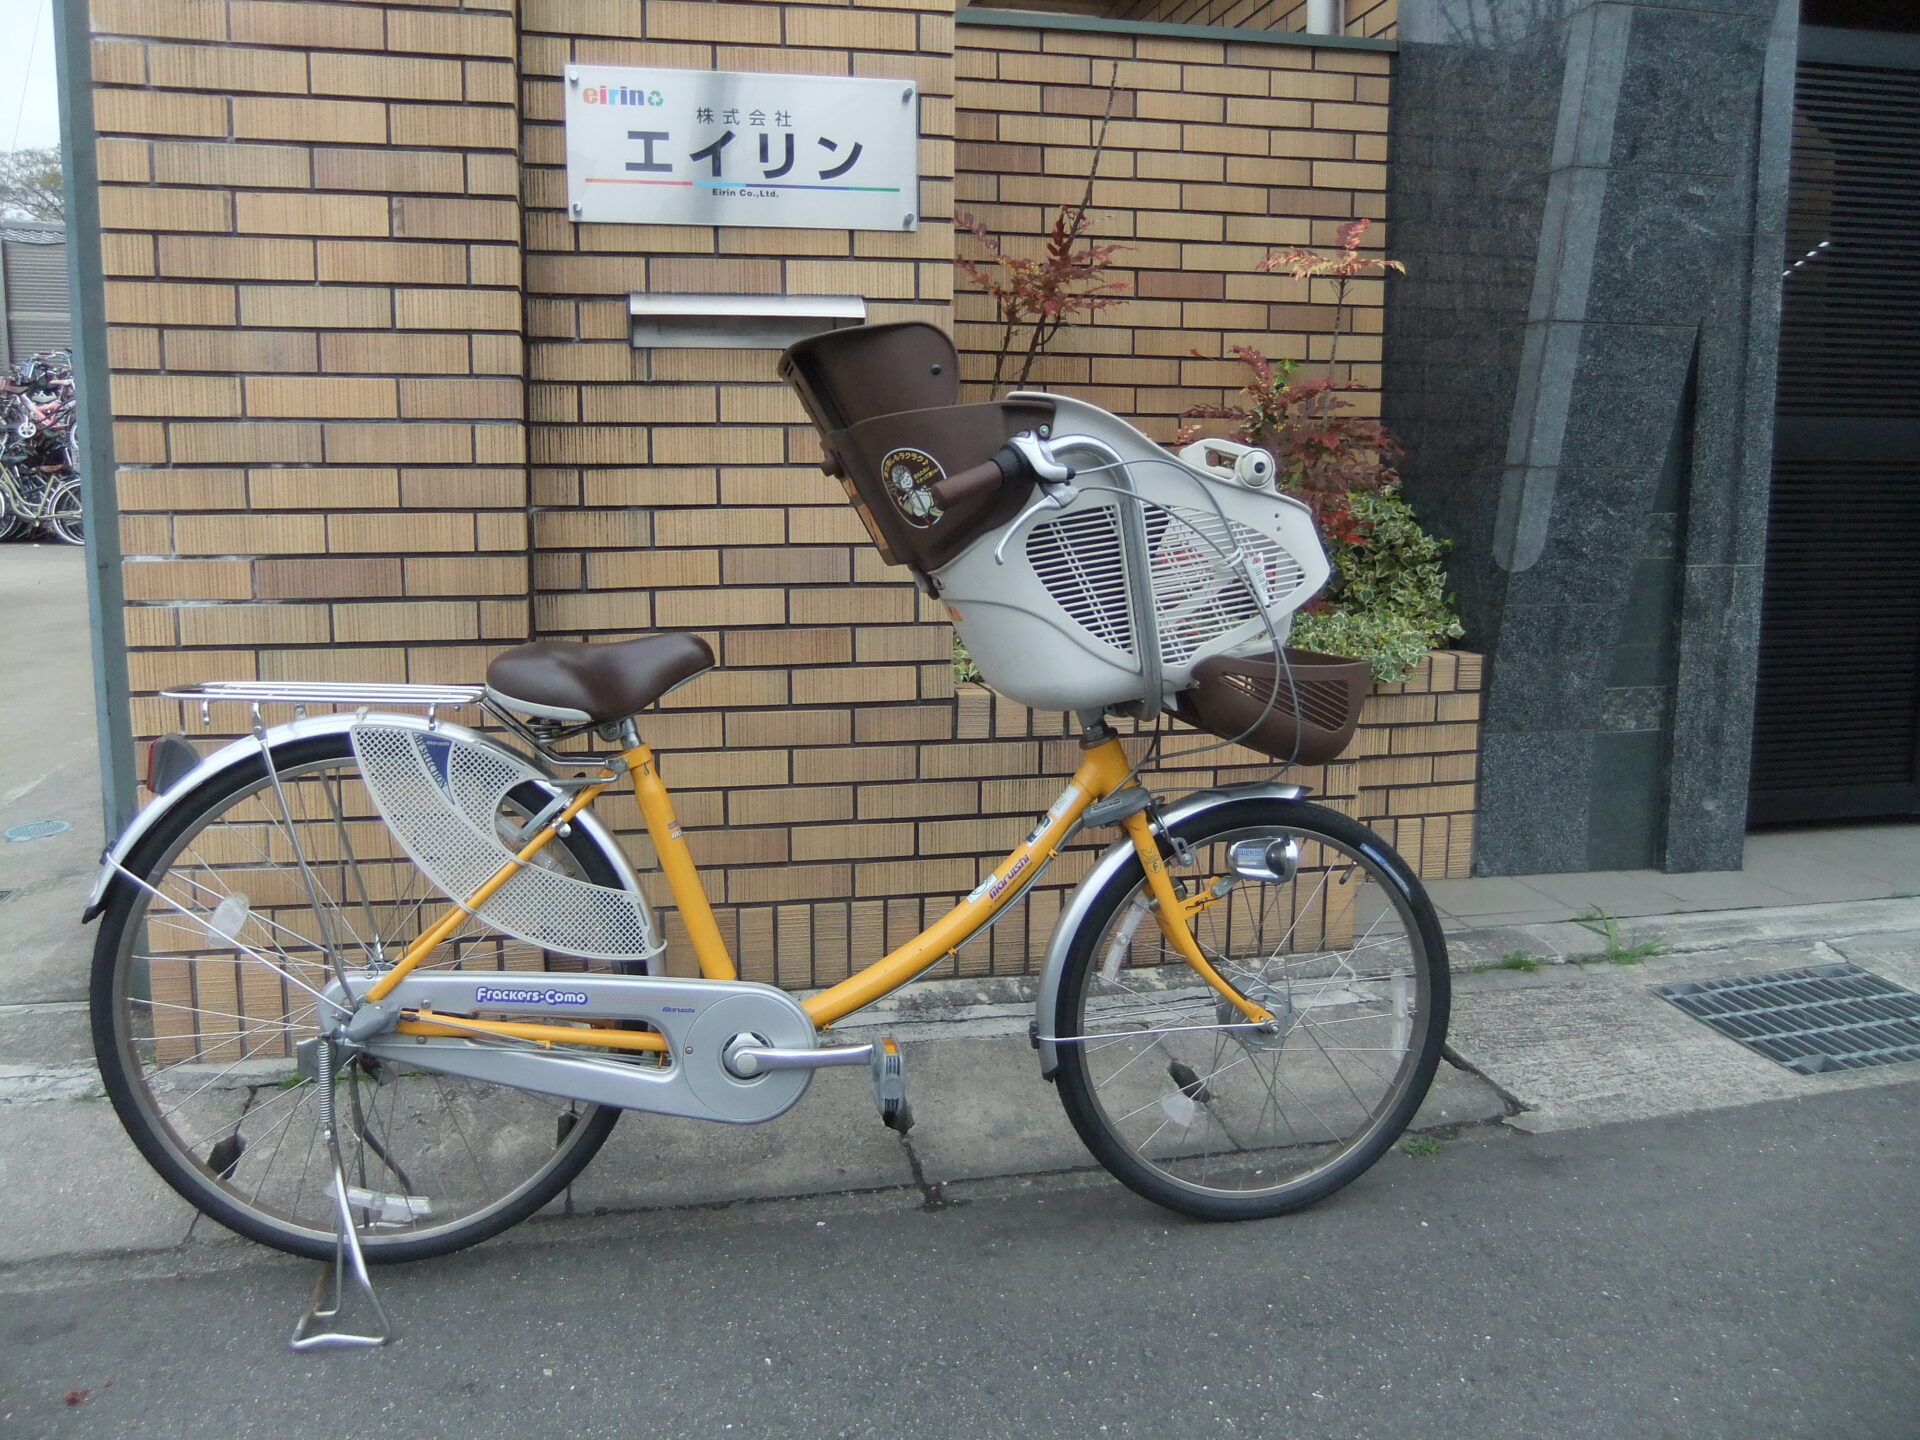 おしゃれ子供乗せ中古自転車の入荷 京都の中古自転車 新車販売 サイクルショップ エイリン